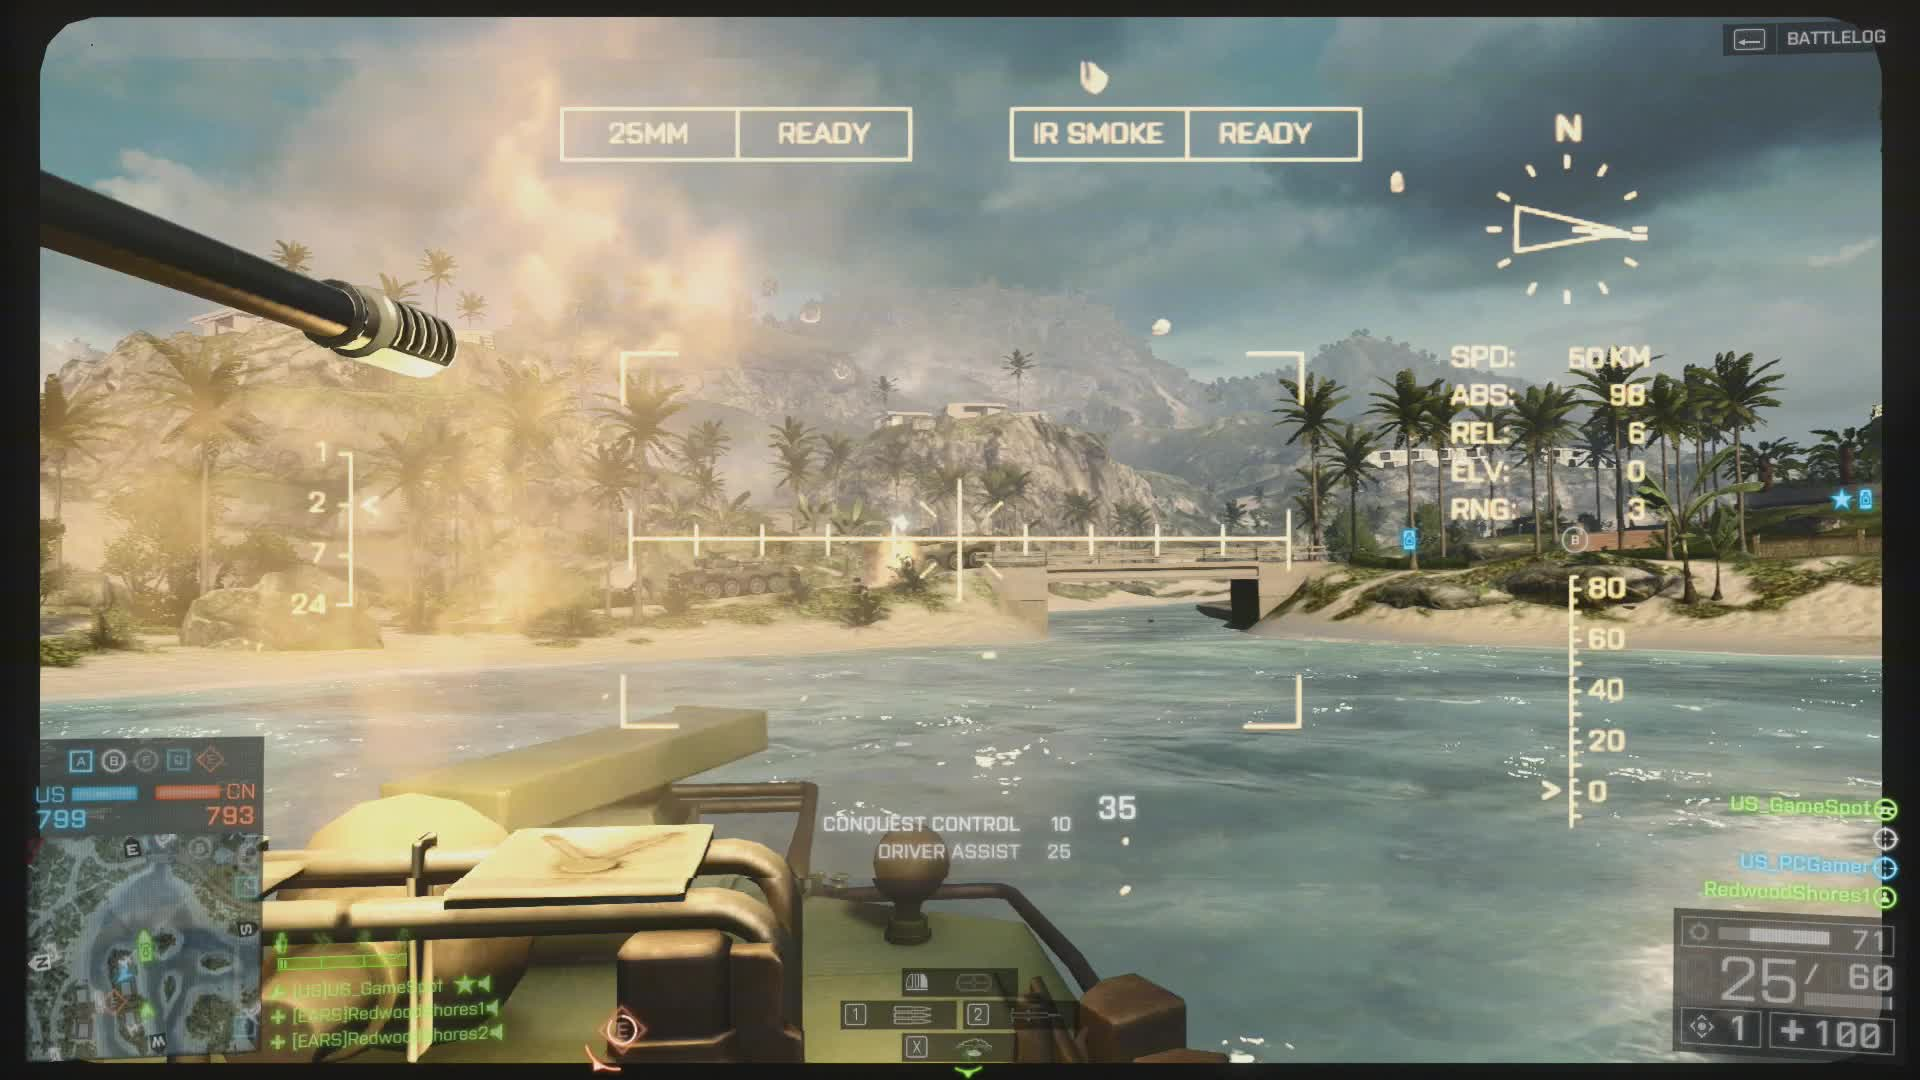 Battlefield - GameSpot